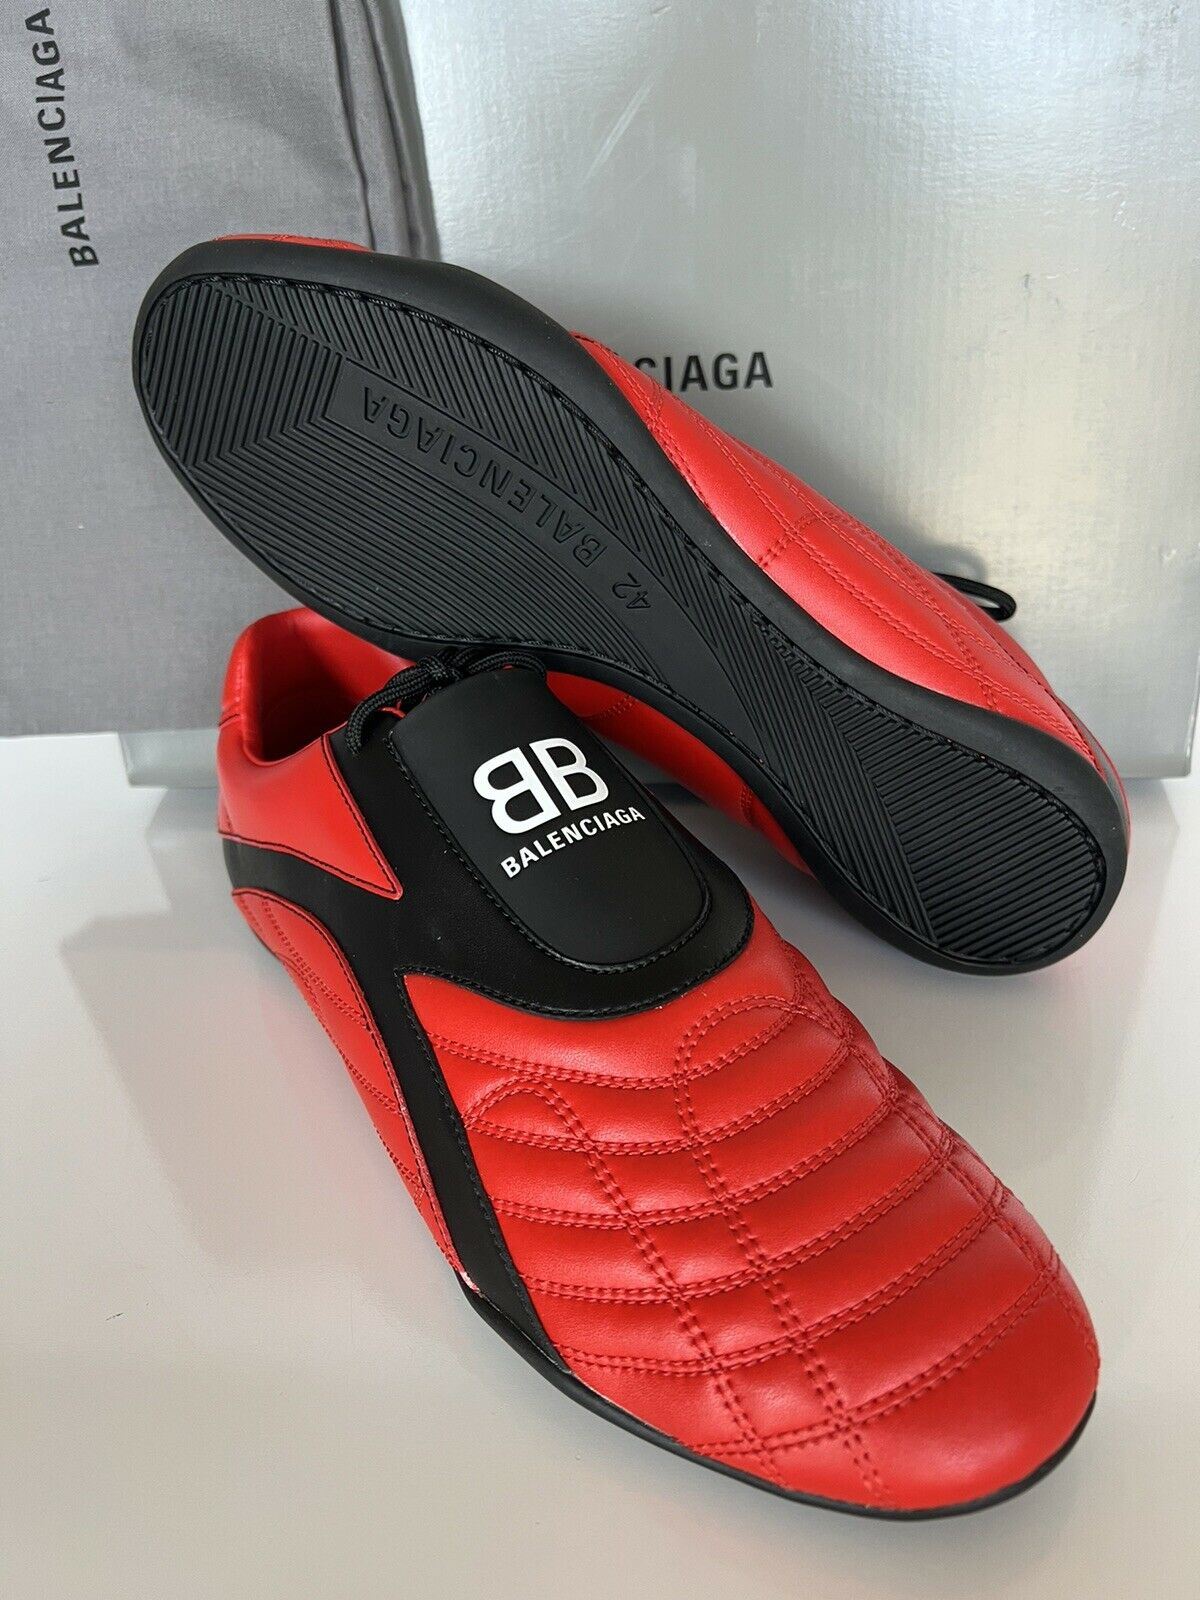 Мужские красные/черные кроссовки Zen Zen за 550 долларов США 9 США (42 евро) 617540 